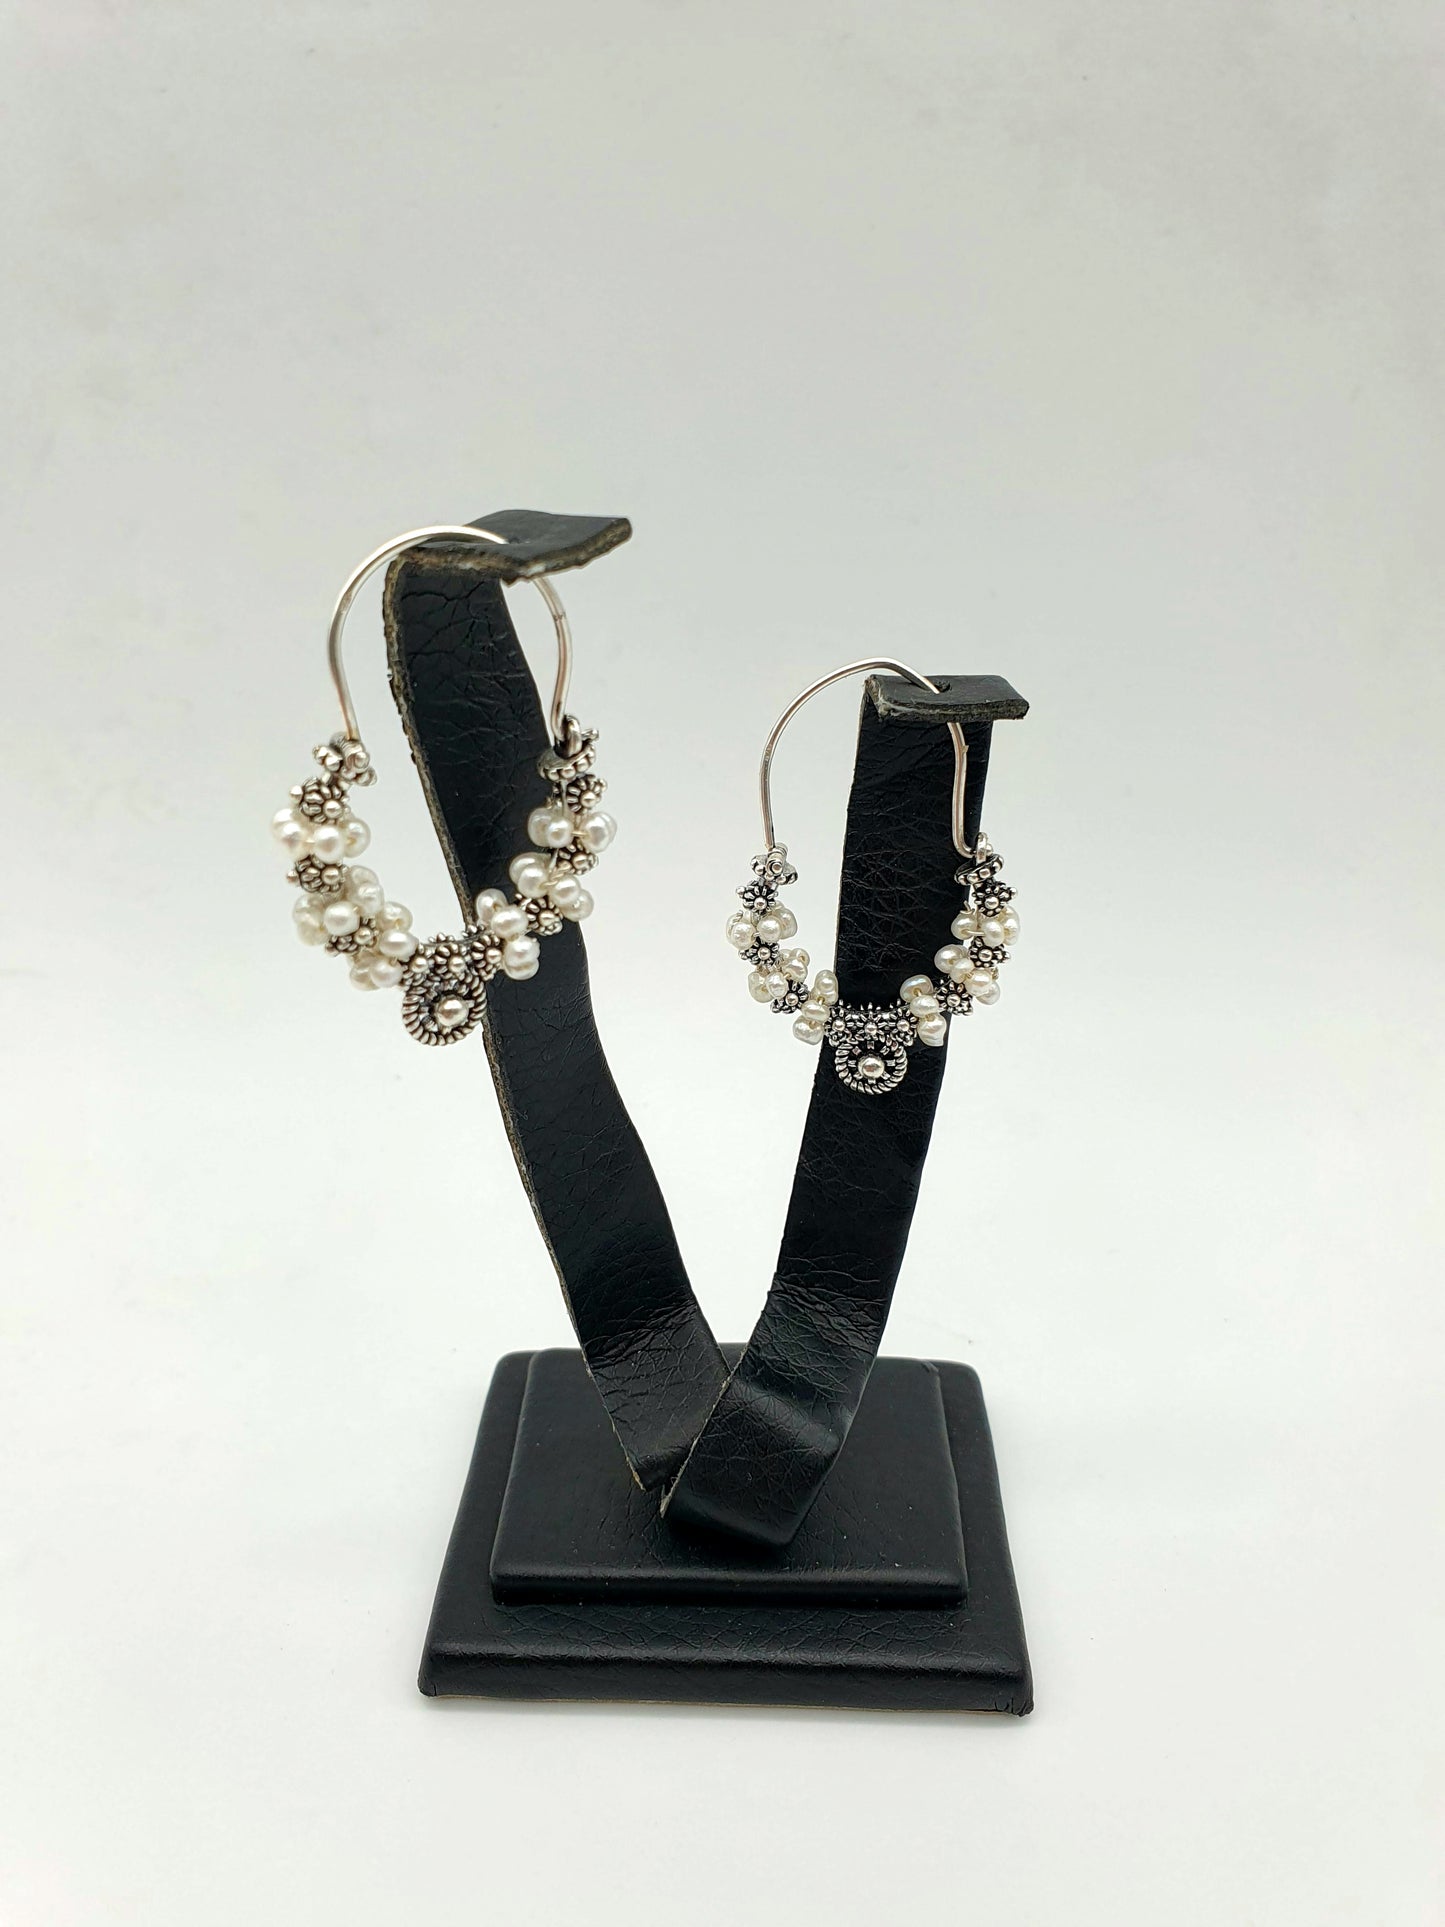 Konaovske earrings silver 925